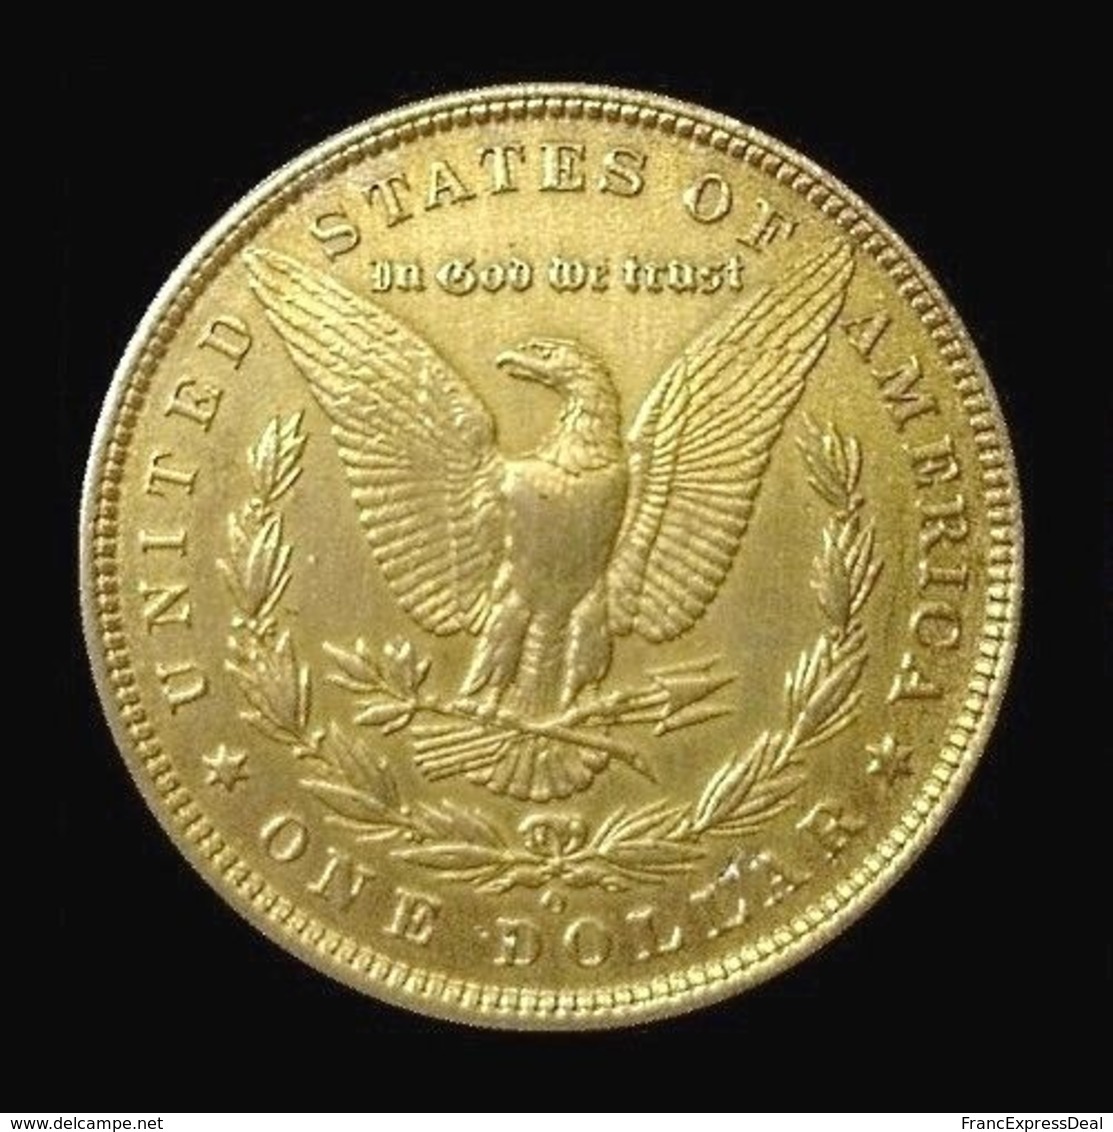 COPIE - 1 Pièce Plaquée OR Sous Capsule ! ( GOLD Plated Coin ) - Etats-Unis USA - Morgan Dollar 1885 - 1$, 3$, 4$